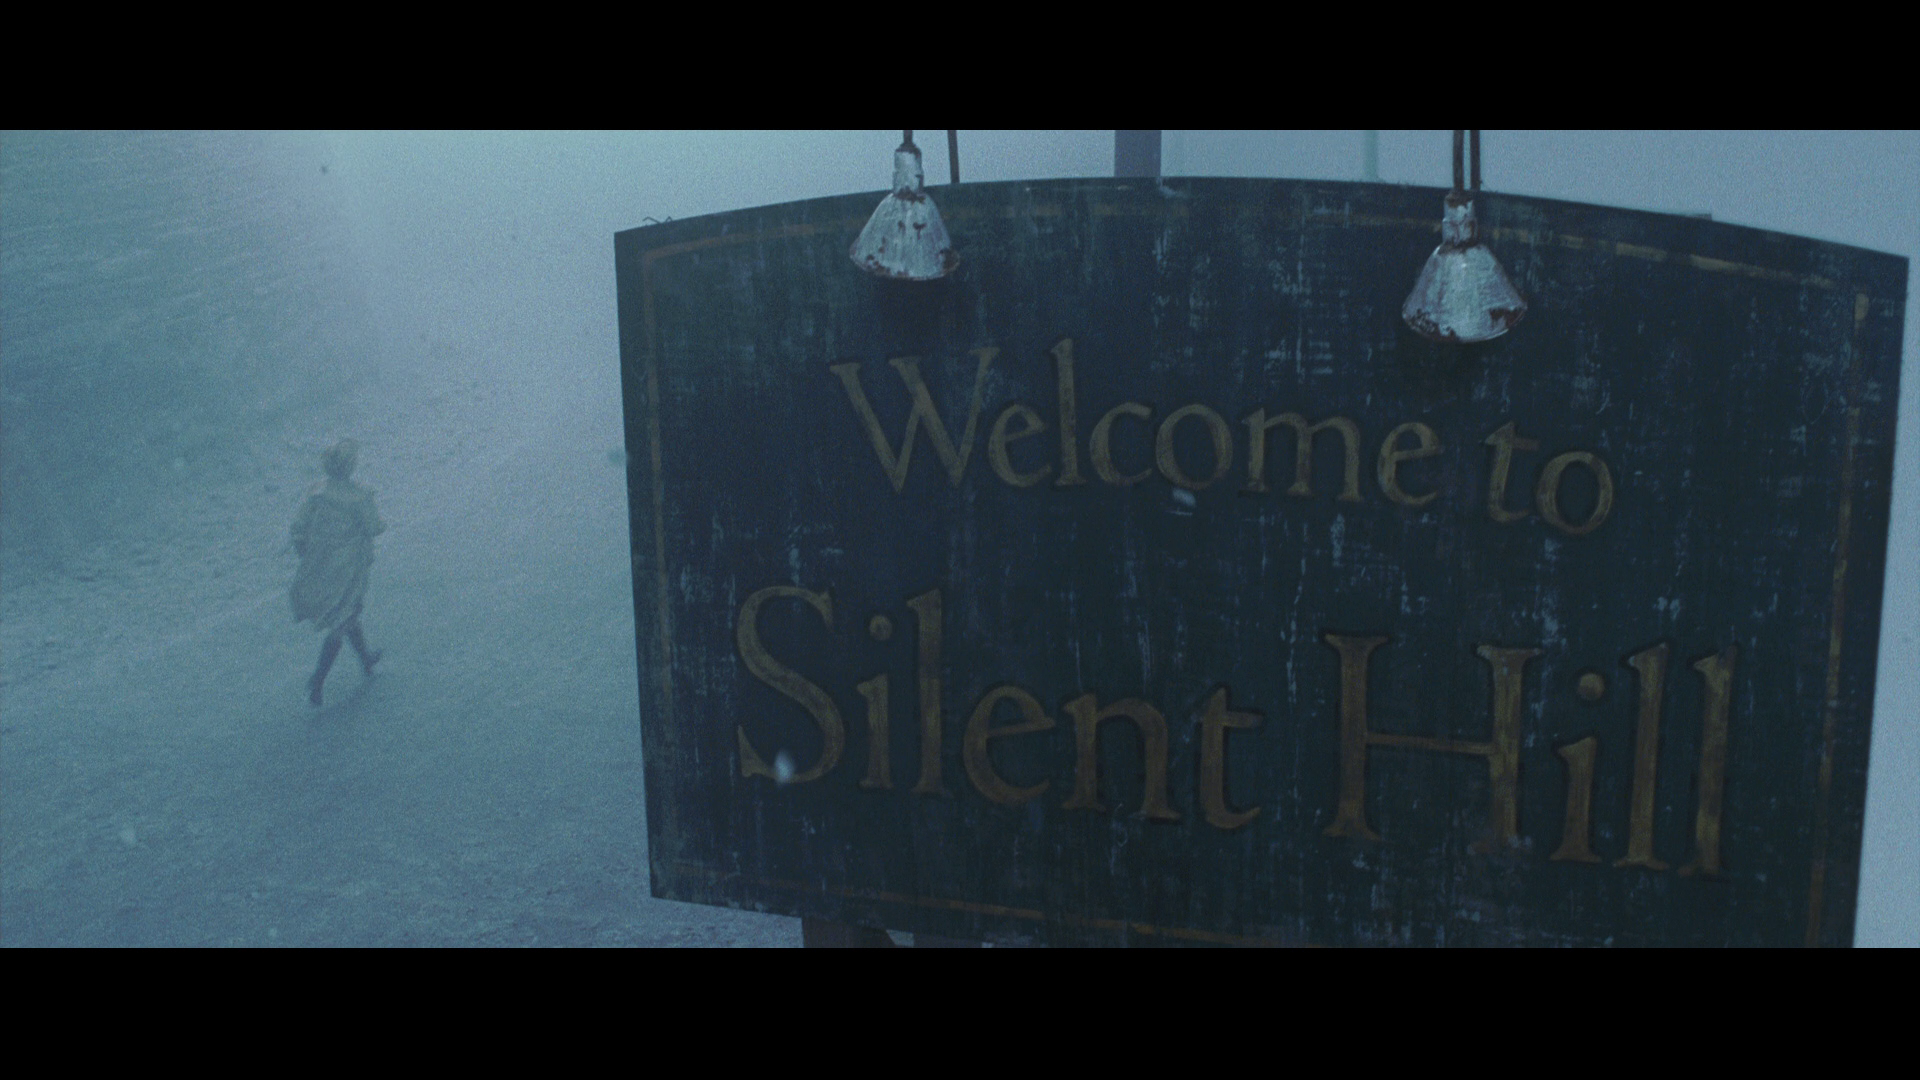  Silent Hill [Blu-ray] : Radha Mitchell, Sean Bean